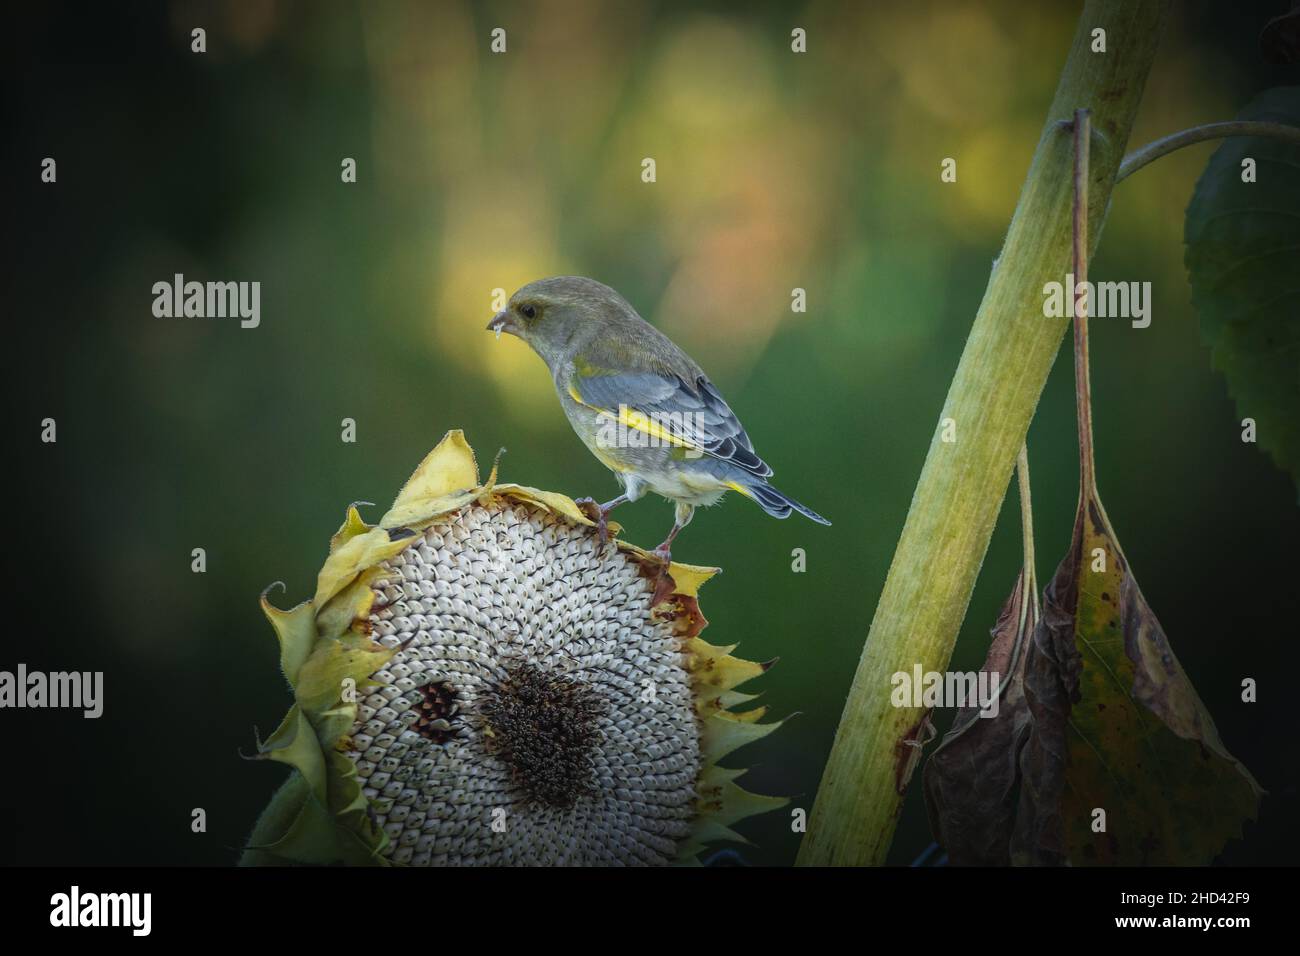 Fotos vom Stieglitz oder Ausch Distelfink genannt im Garten auf Futtersuche an Sonnenblumen.Porträt vom Stieglitz (Distelfink) im Herbst. Banque D'Images